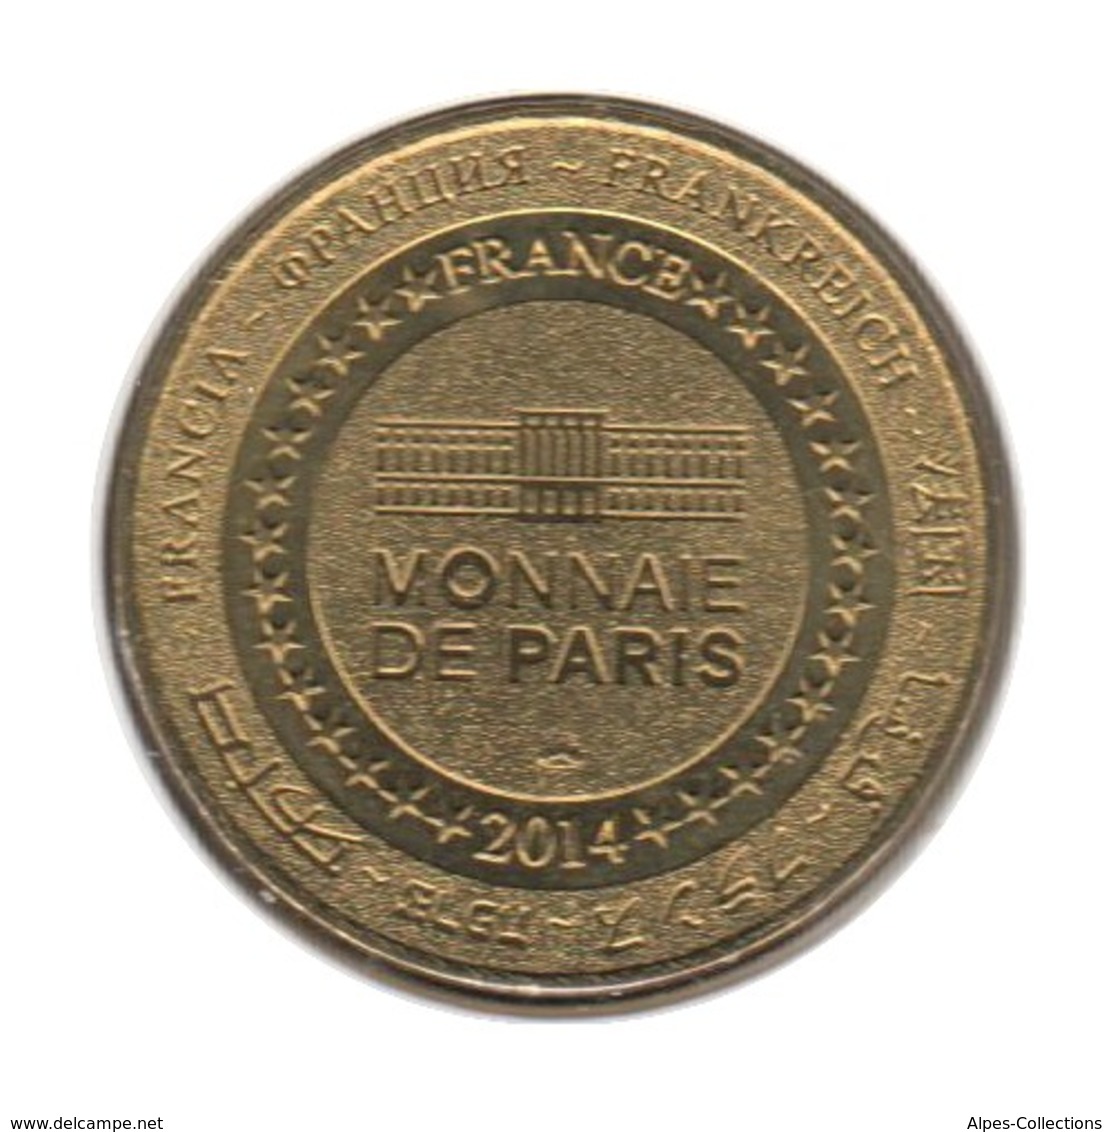 18005 - MEDAILLE TOURISTIQUE MONNAIE DE PARIS 18 - Jacques Cœur En Berry - 2014 - 2014